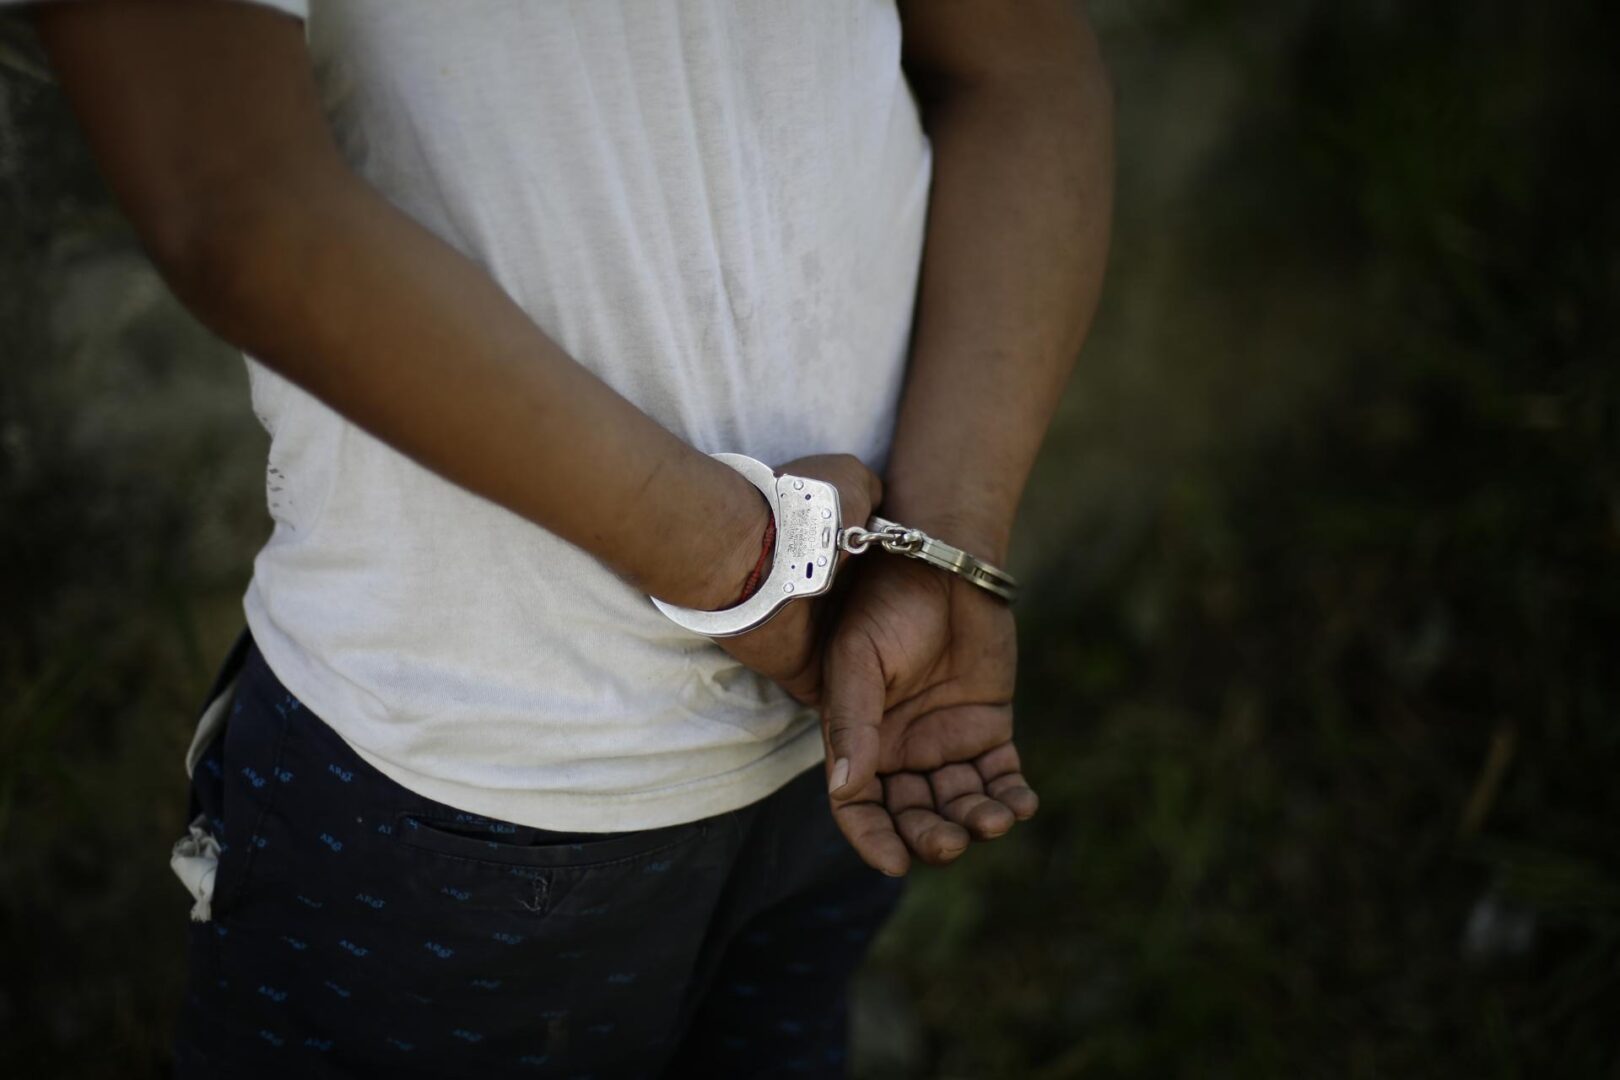 Cuatro detenidos por llevar más de 100 kilos de cocaína en maletas en el norte de México